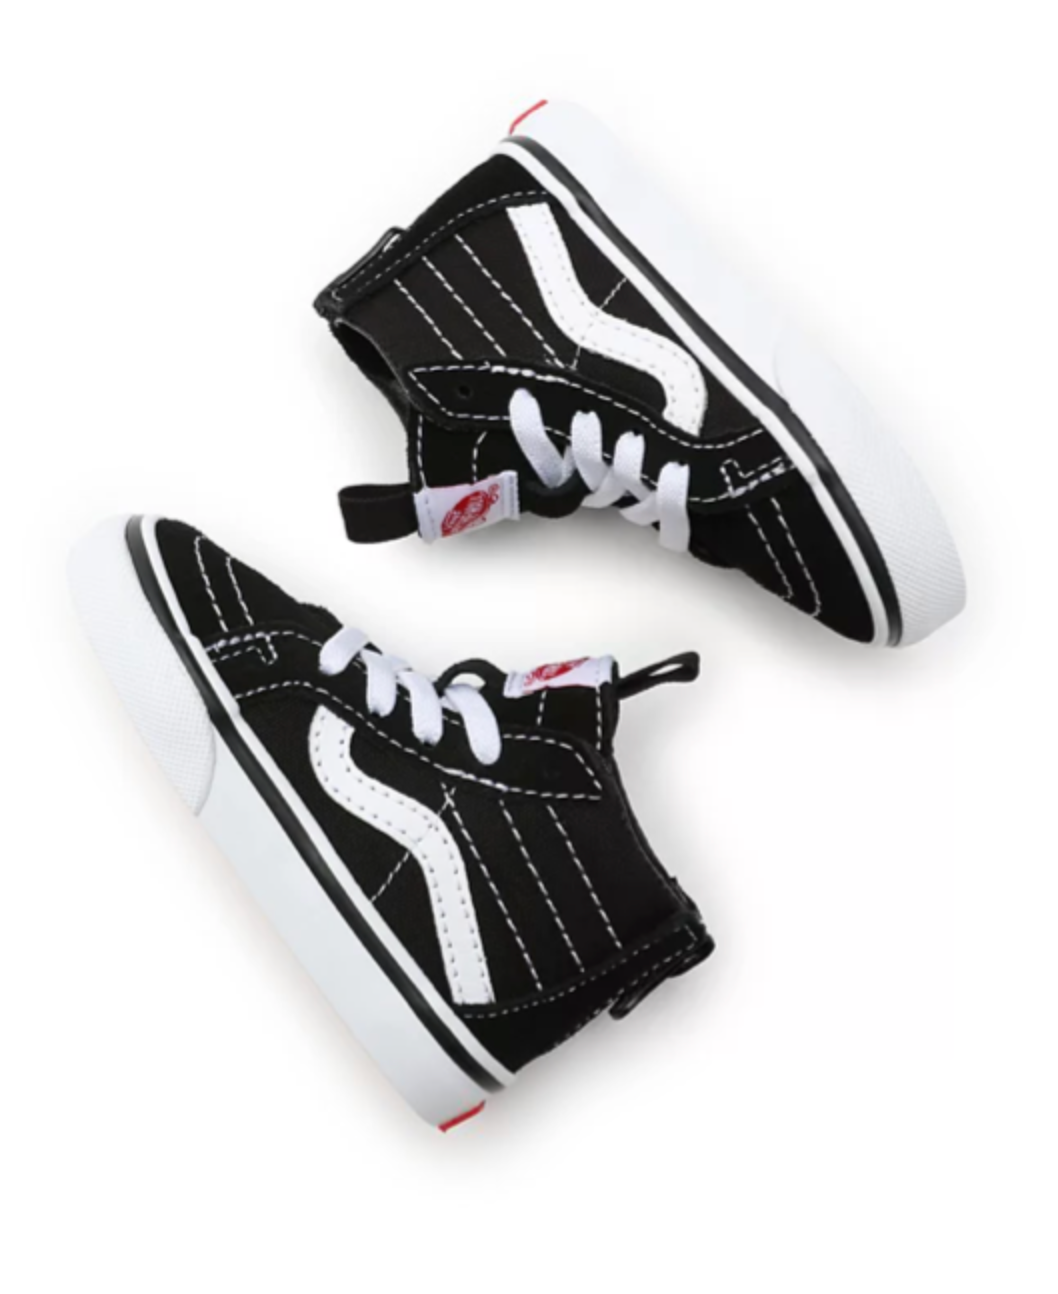 Sneakers Kids SK8-Hi Zip Black / White